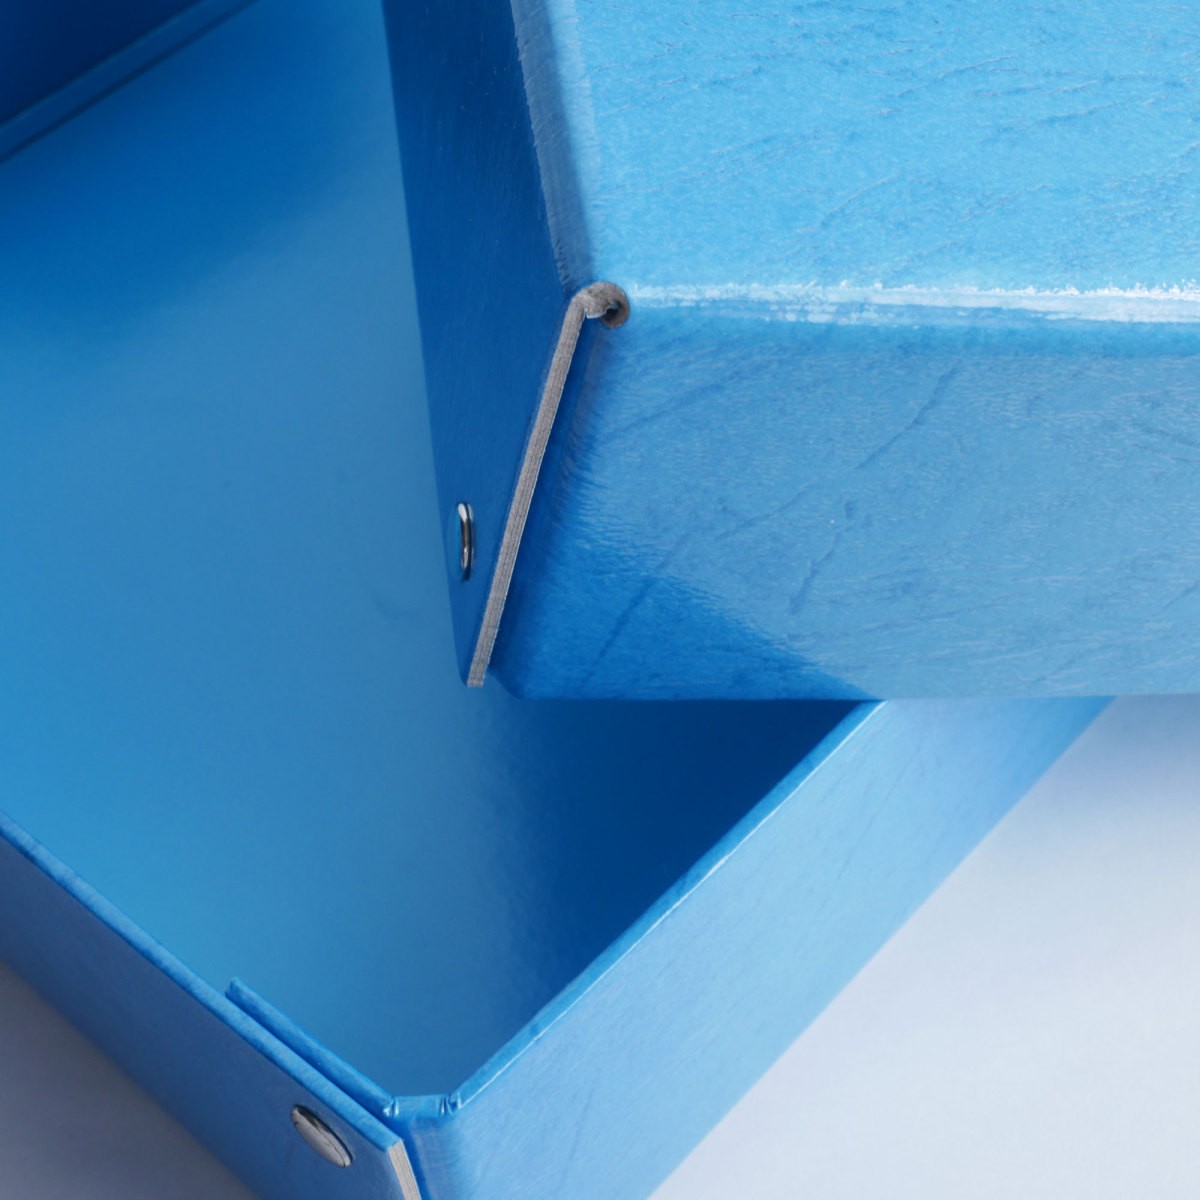 [ официальный фирменный магазин ] бумажный . ящик для инструментов регулировка коробка синий / одноцветный /A4 соответствует O-PPB серебристый Poe серебряный птица промышленность 